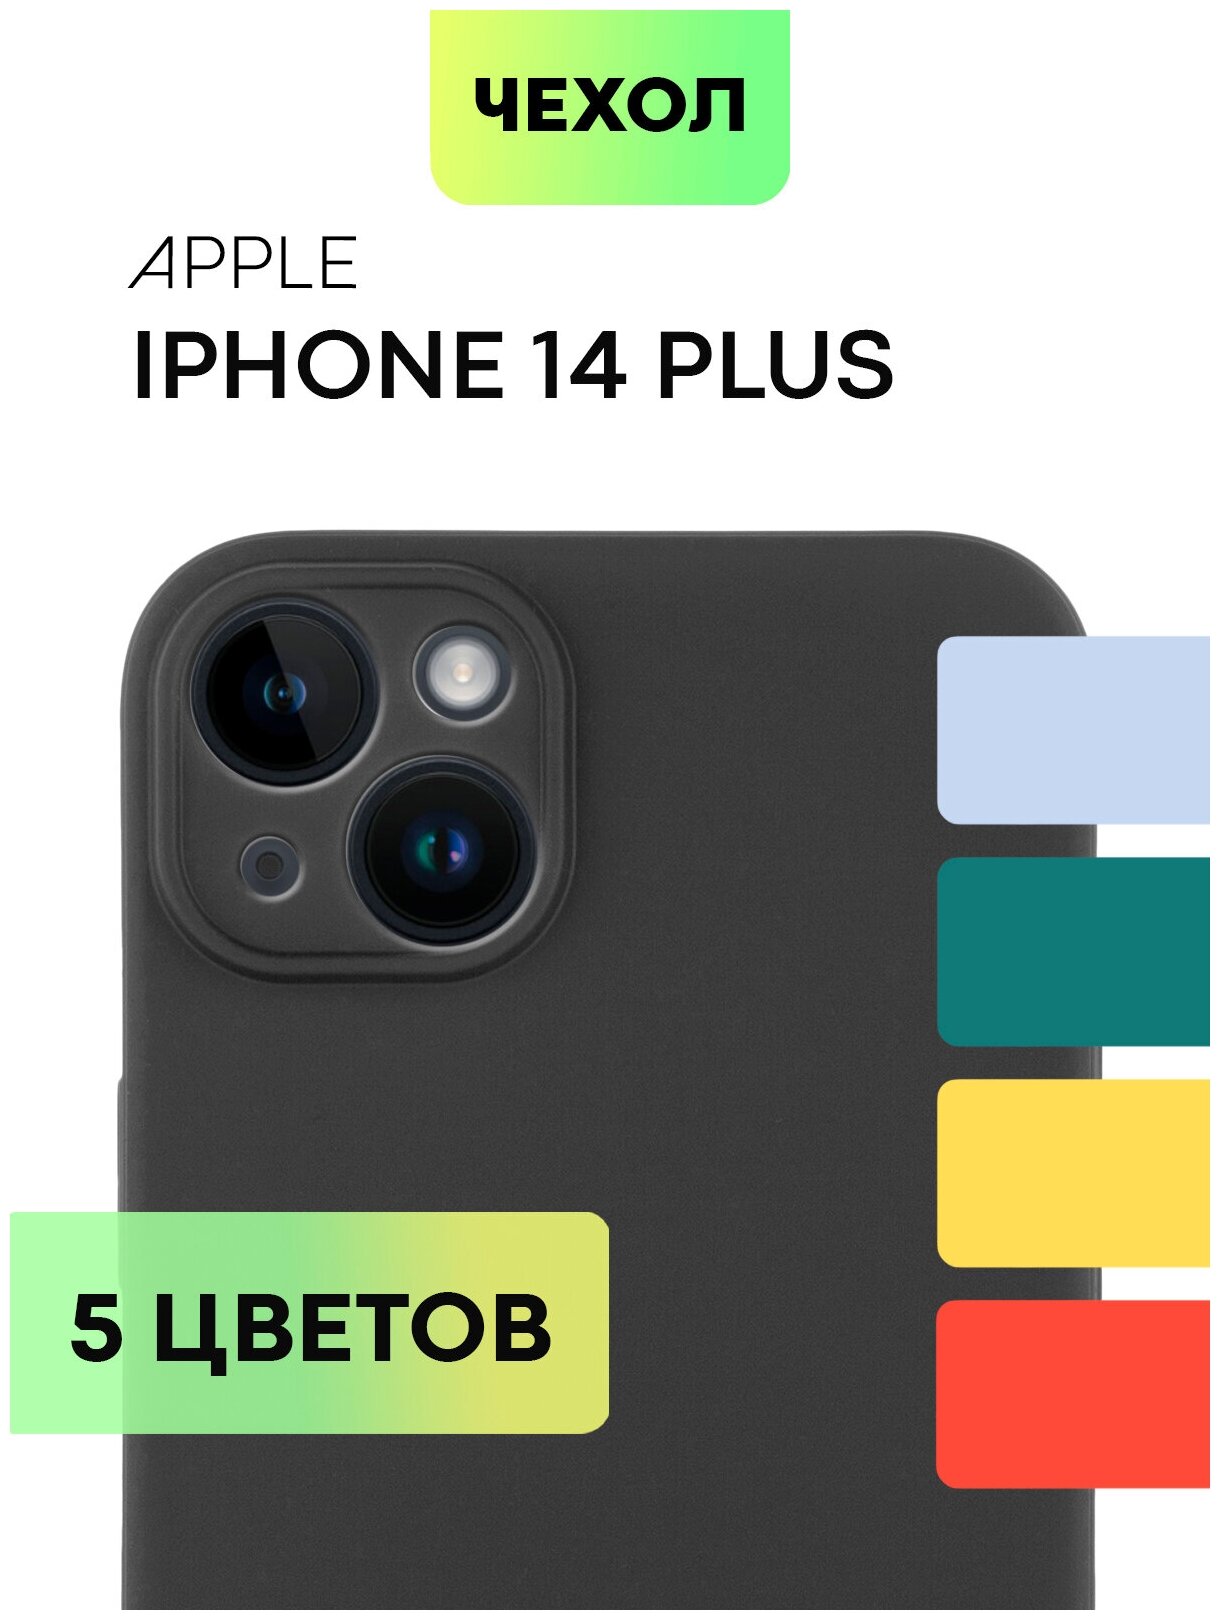 Чехол для Apple iPhone 14 Plus (Эпл Айфон 14 Плюс) тонкий, силиконовый чехол, с матовым покрытием и бортиком (защитой) вокруг камер, черный BROSCORP